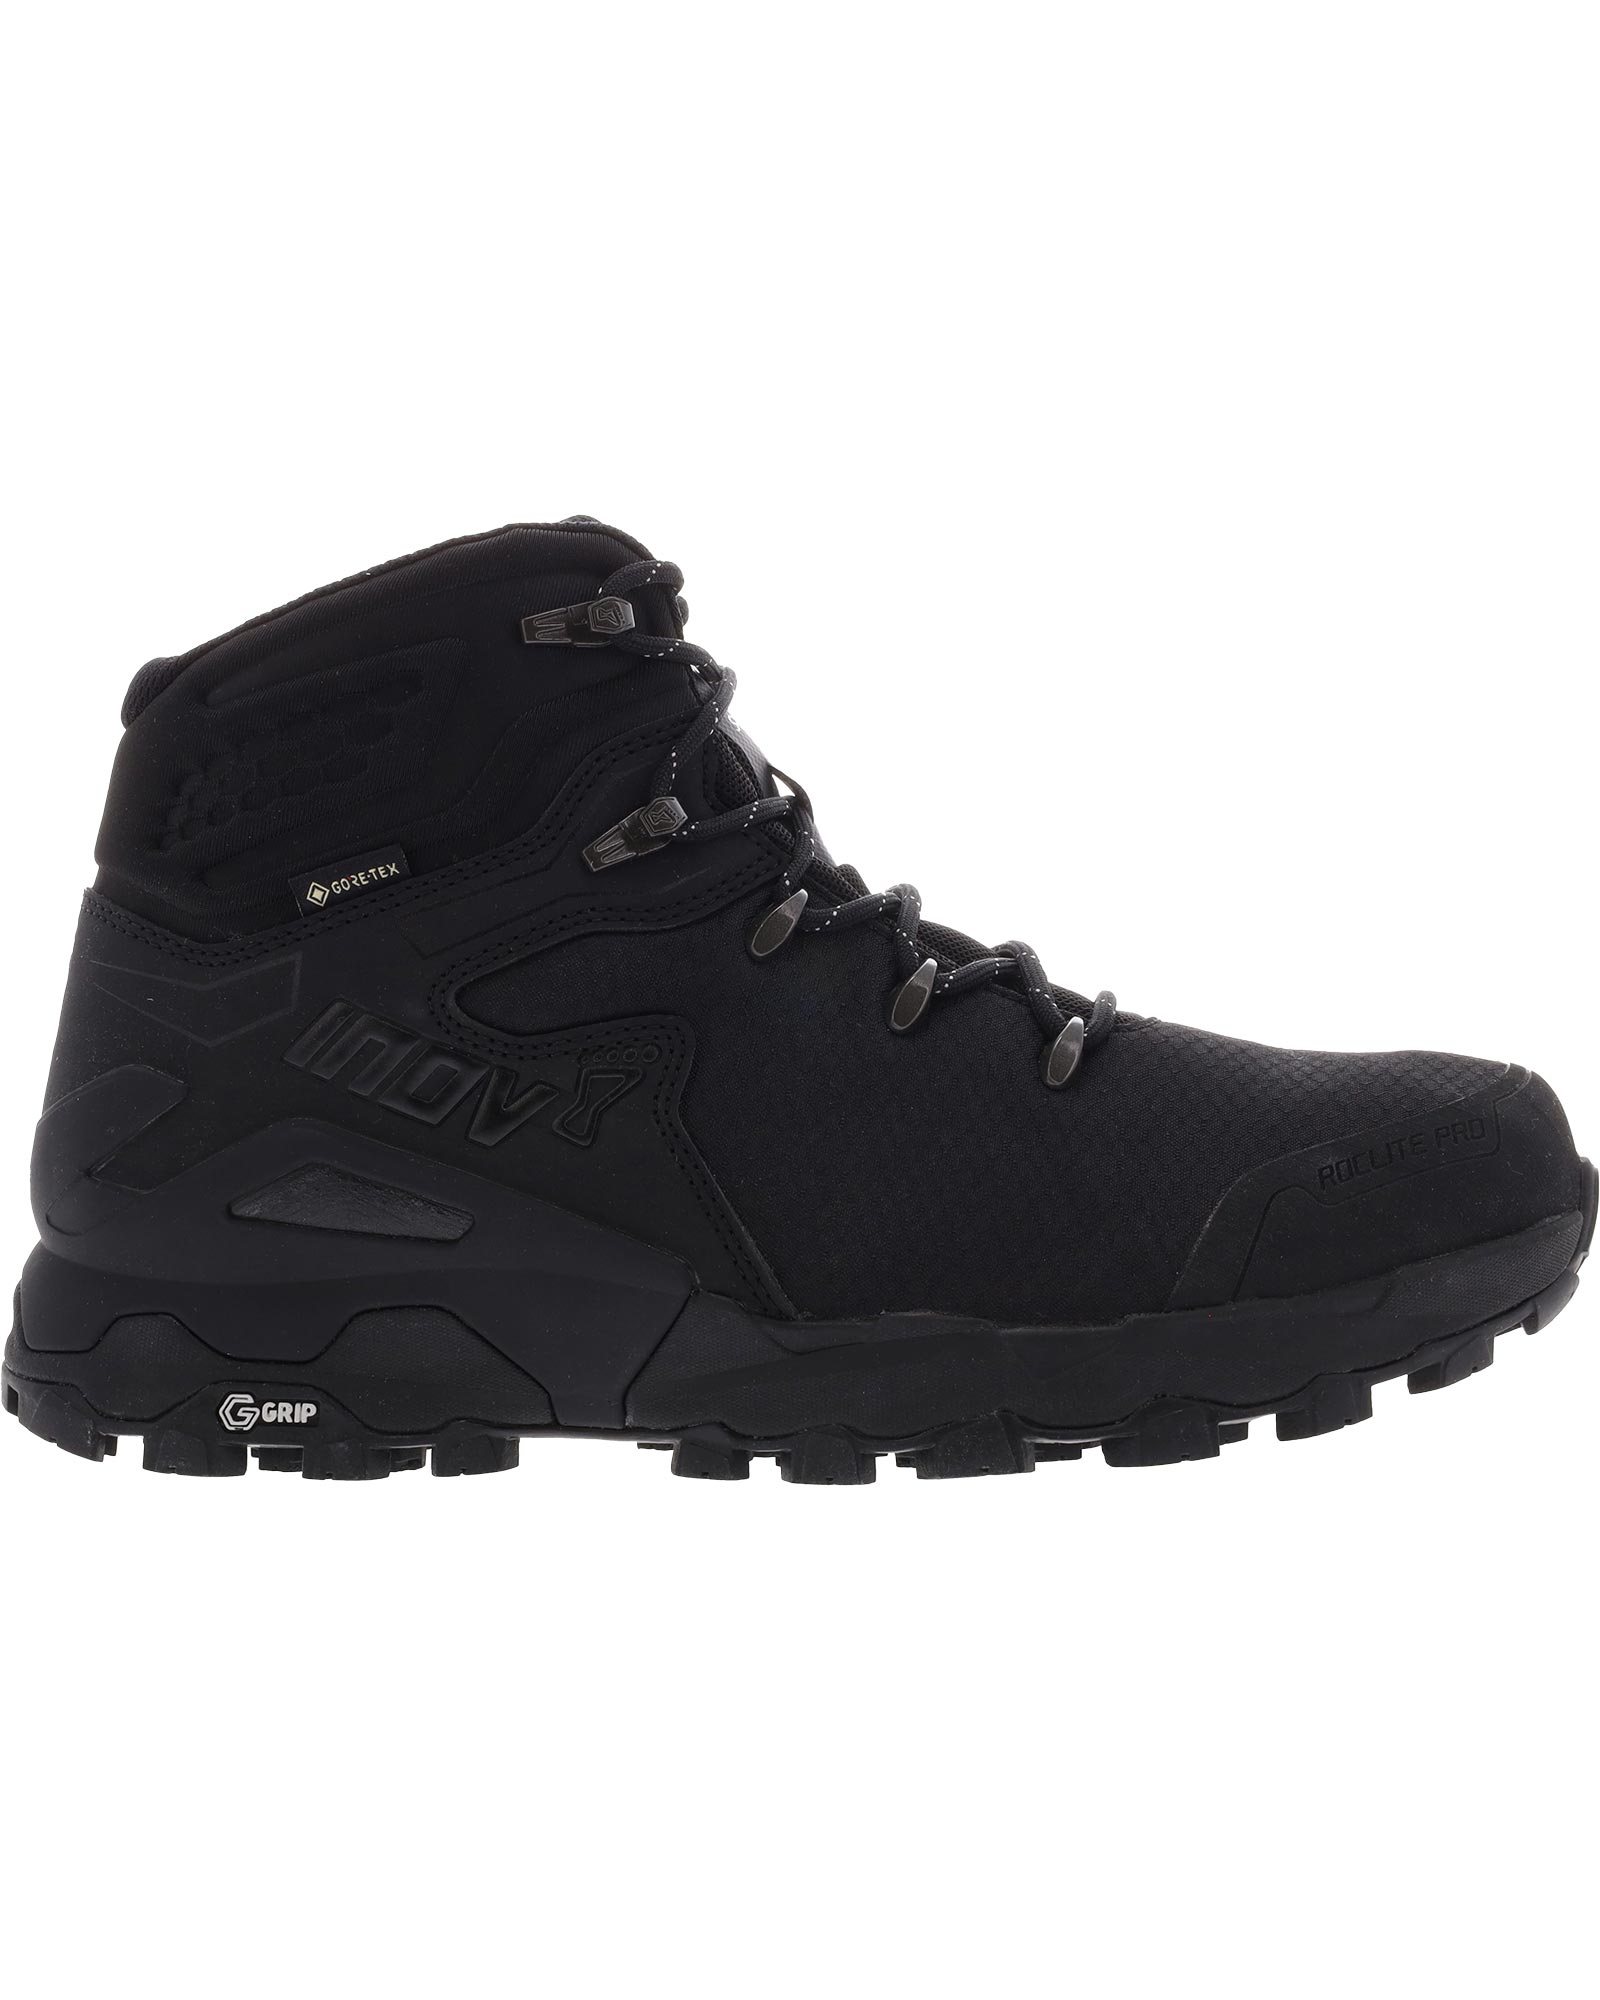 Inov 8 Roclite Pro G 400 V2 GORE TEX Men’s Boots - black UK 11.5